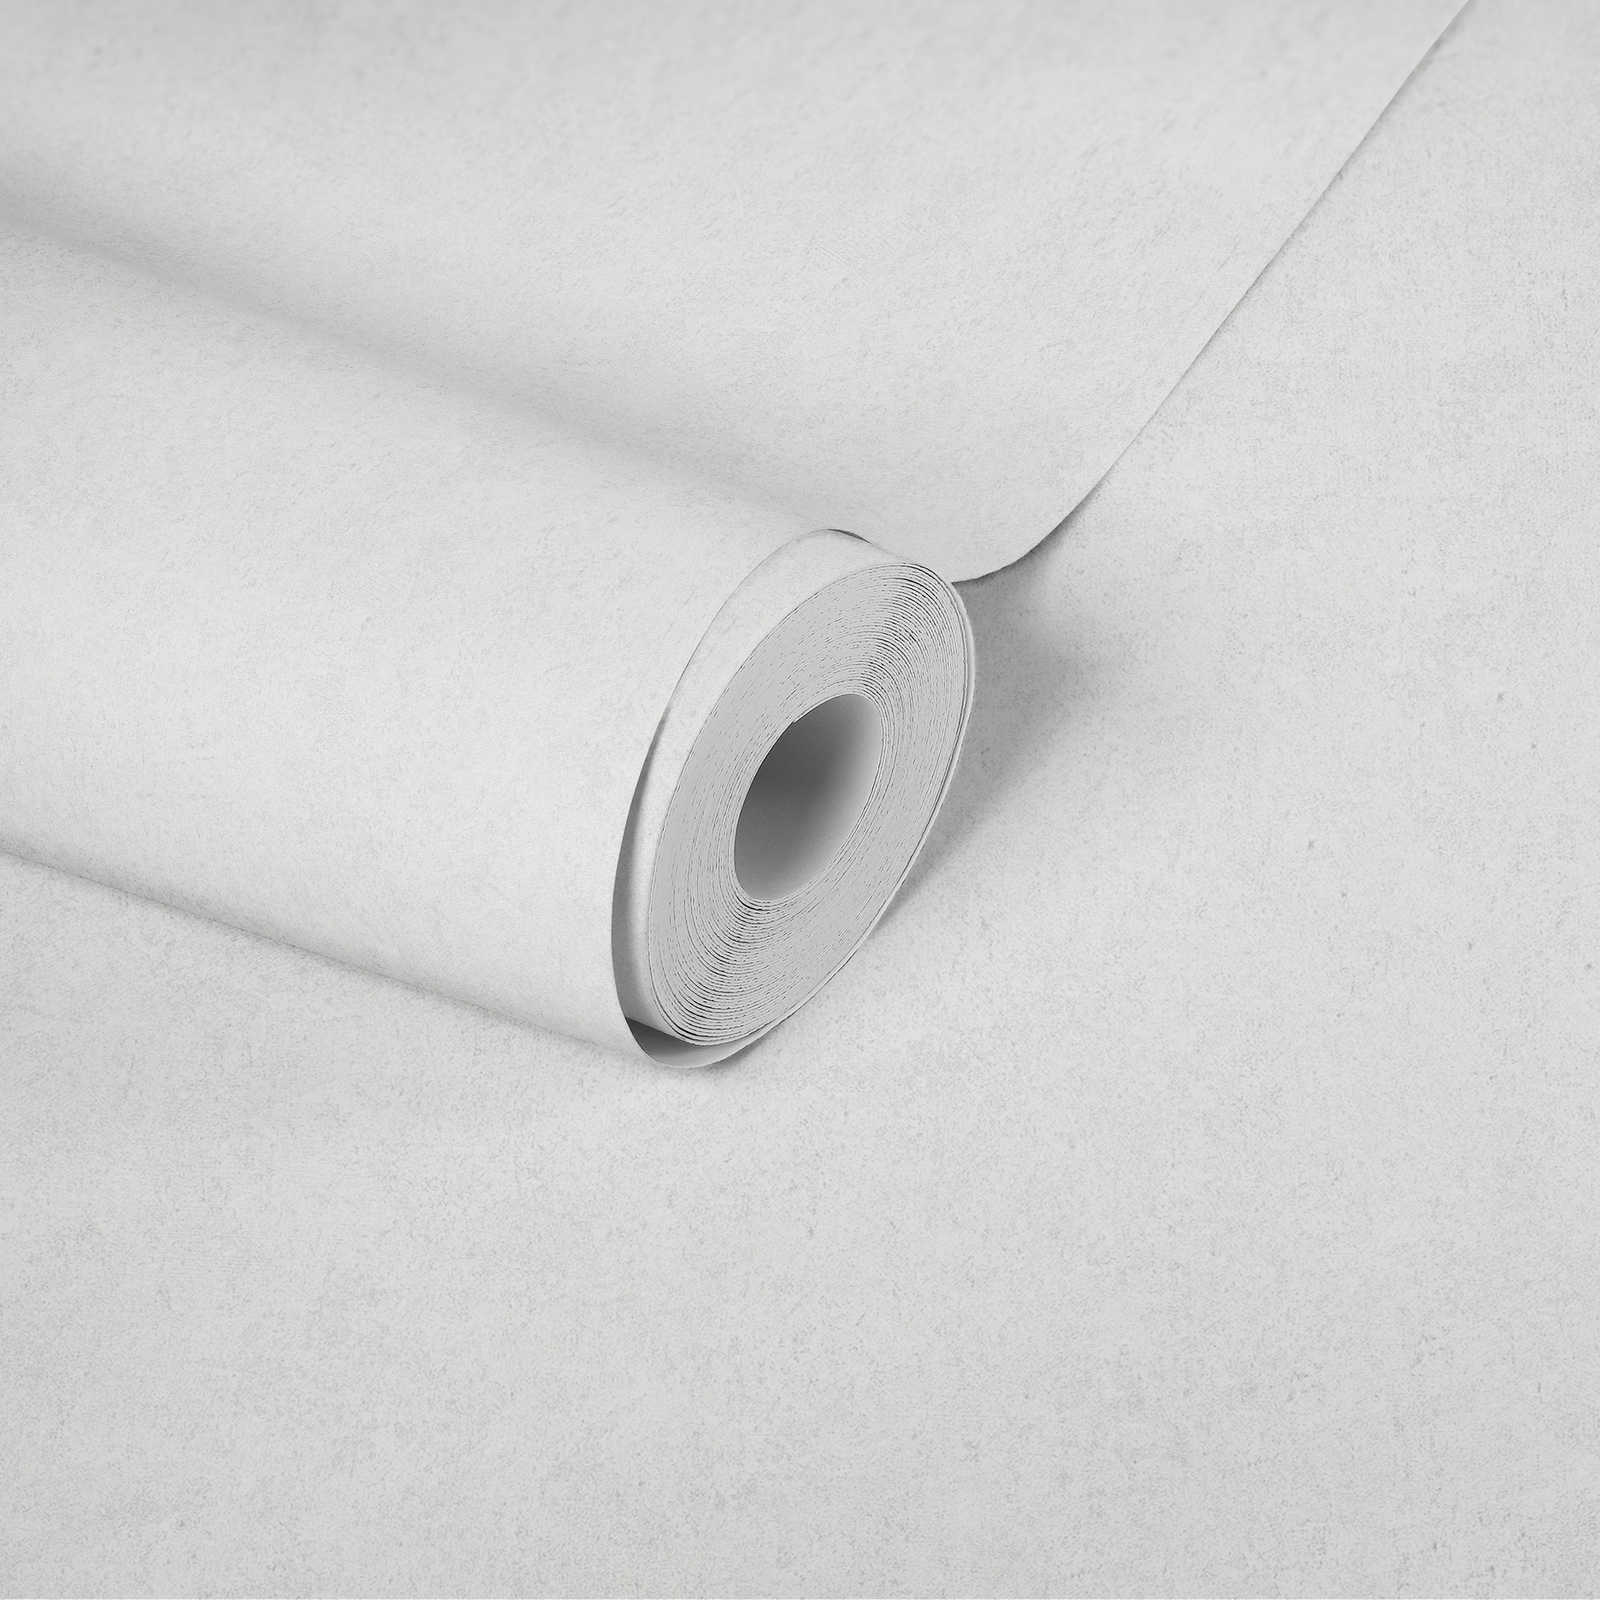             Papier peint gris blanc avec structure naturelle imitation pierre
        